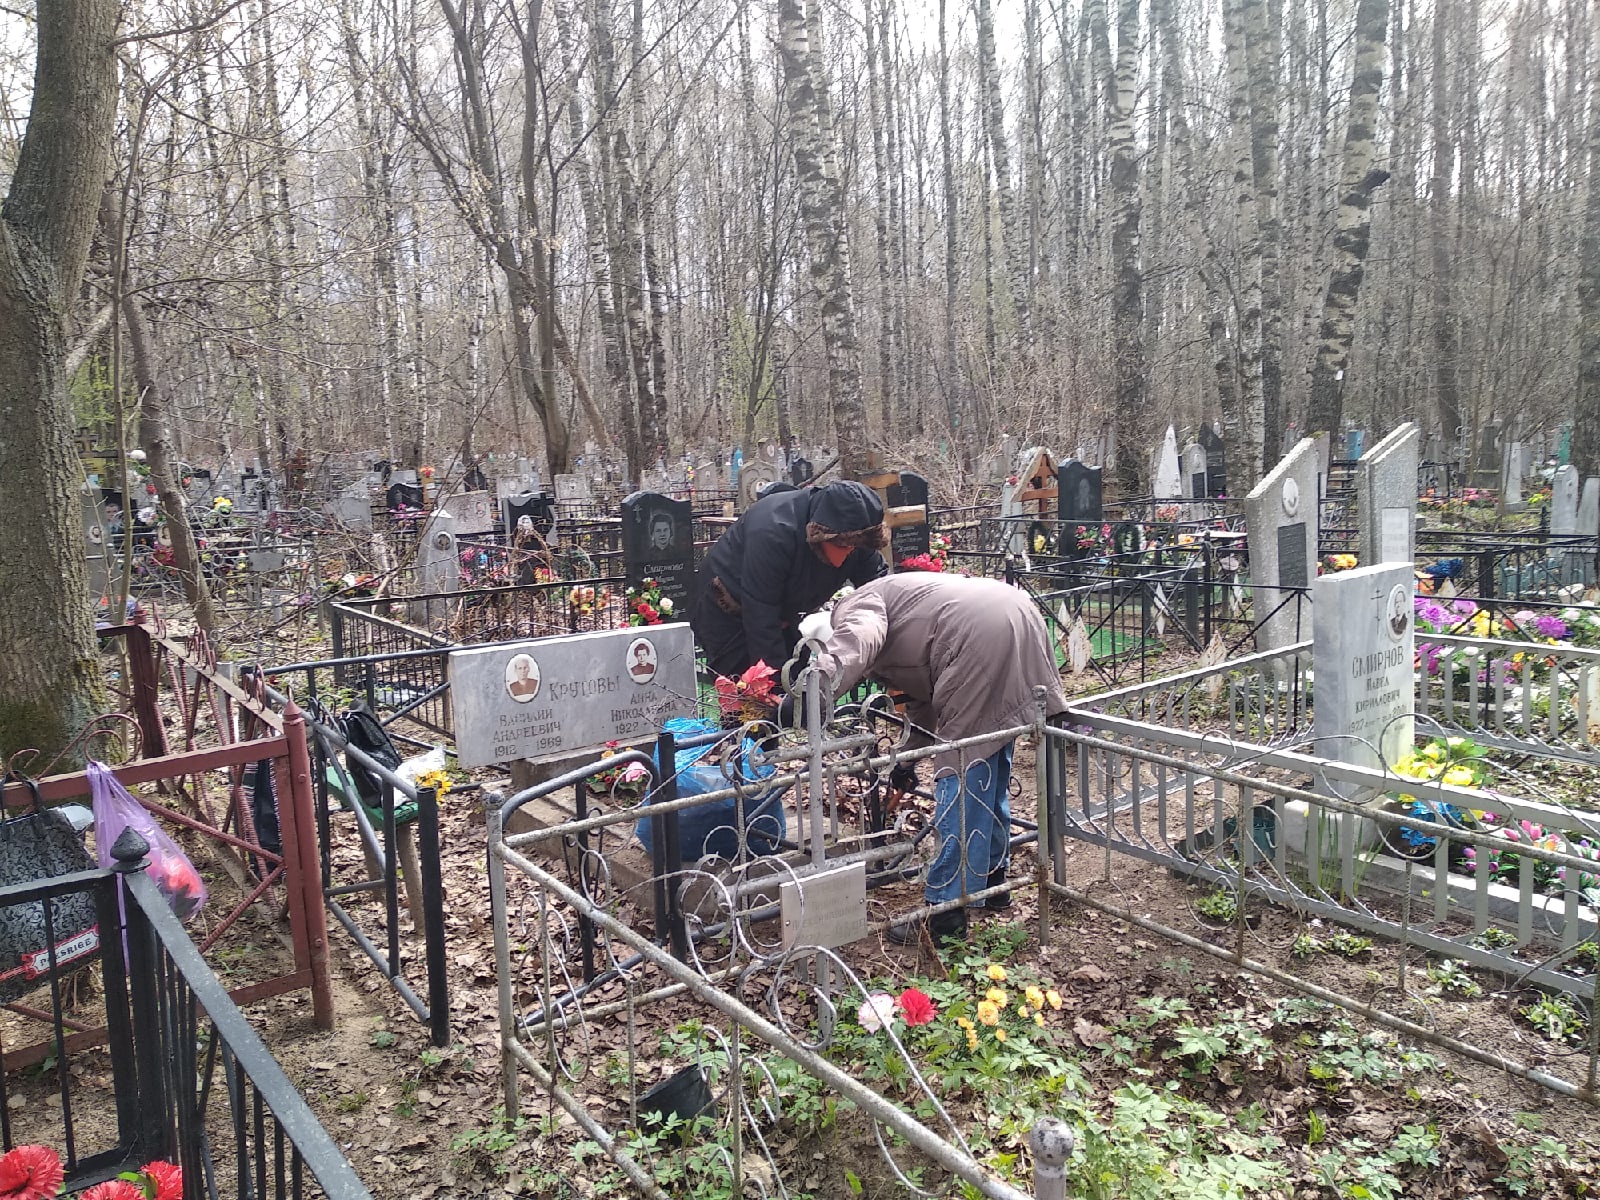  "Ходить по могилам?": на ярославском кладбище ввели кощунственное правило